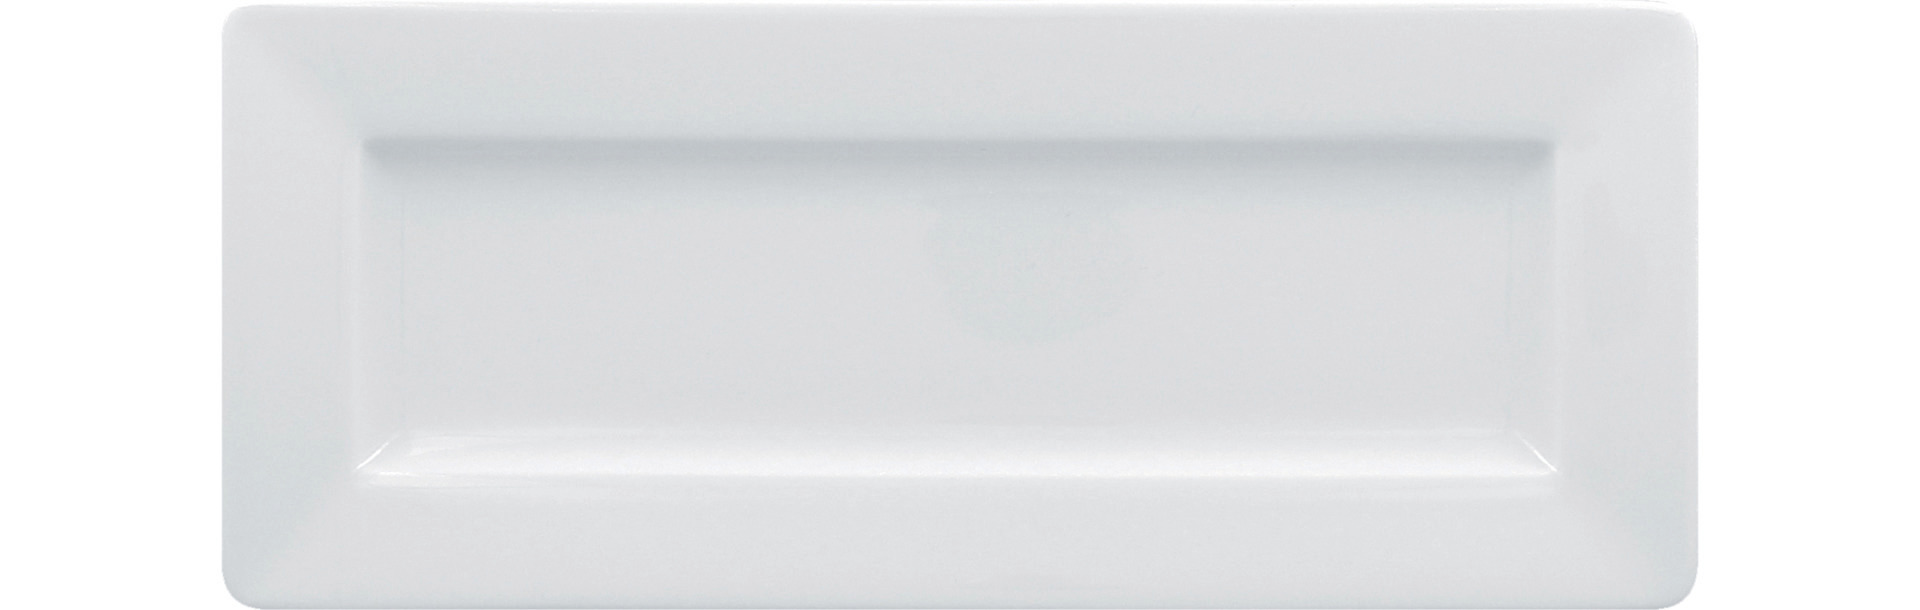 Teller rechteckig 290 x 120 mm bright-white